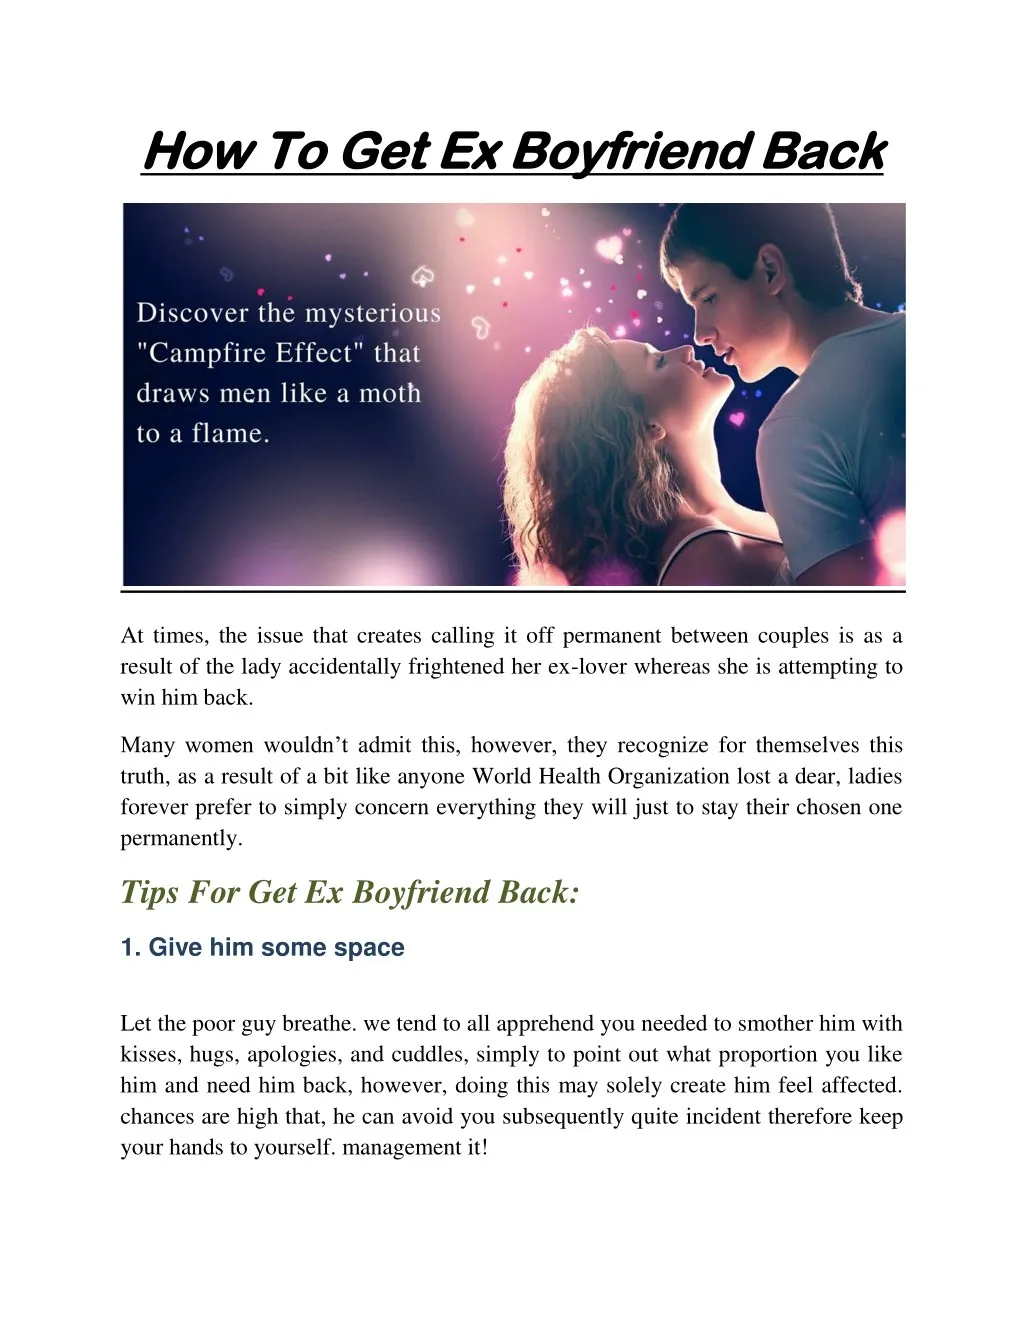 how to get ex boyfriend back